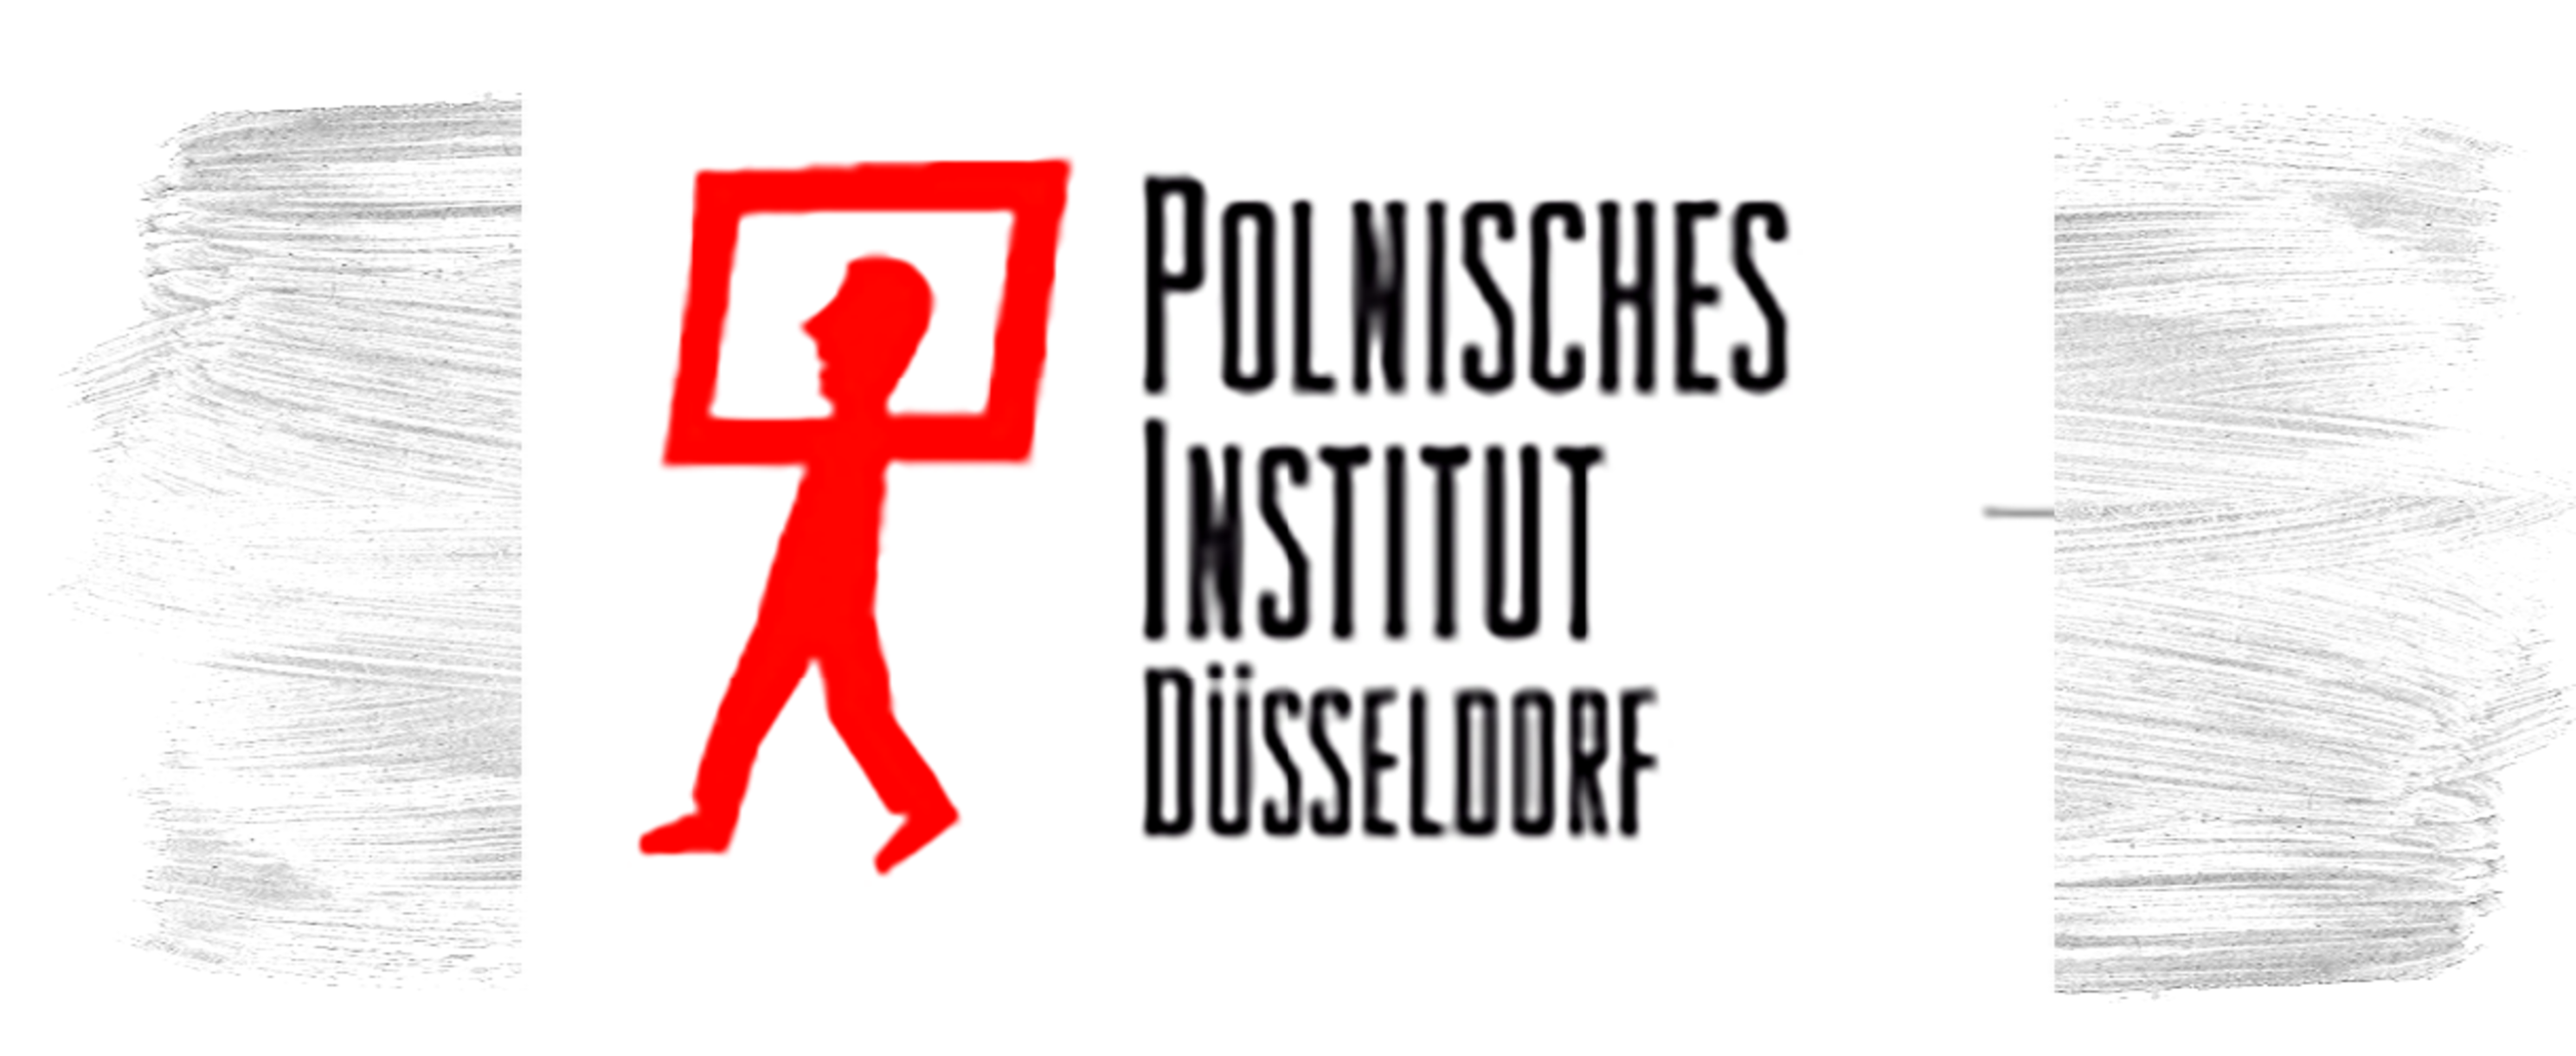 Polnisches_Institut